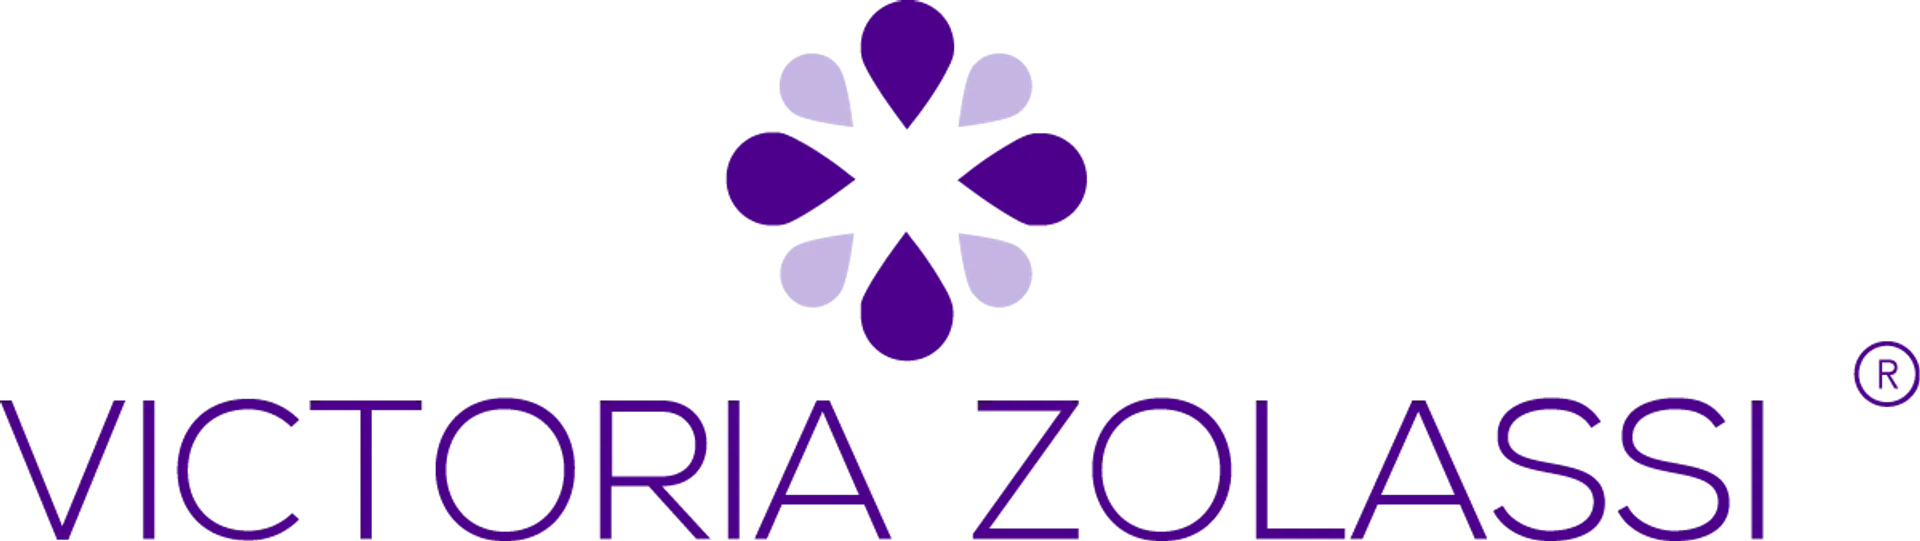 VICTORIA ZOLASSI logo